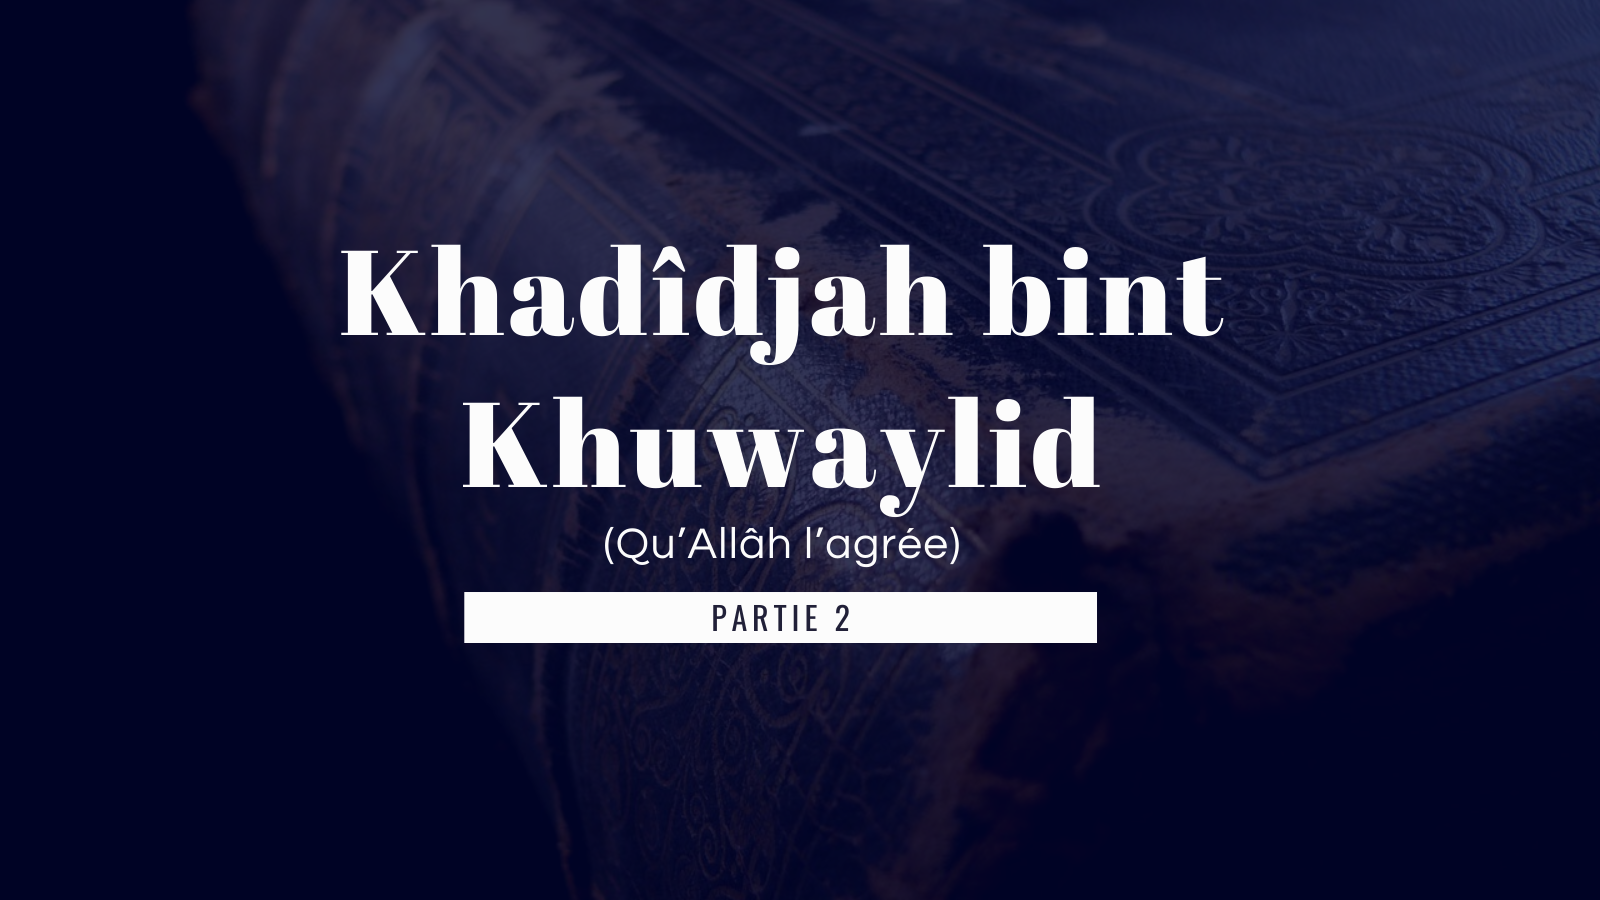 Le  mariage de Khadîdjah bint Khuwaylid au prophète Mohamed ( Partie 2 )